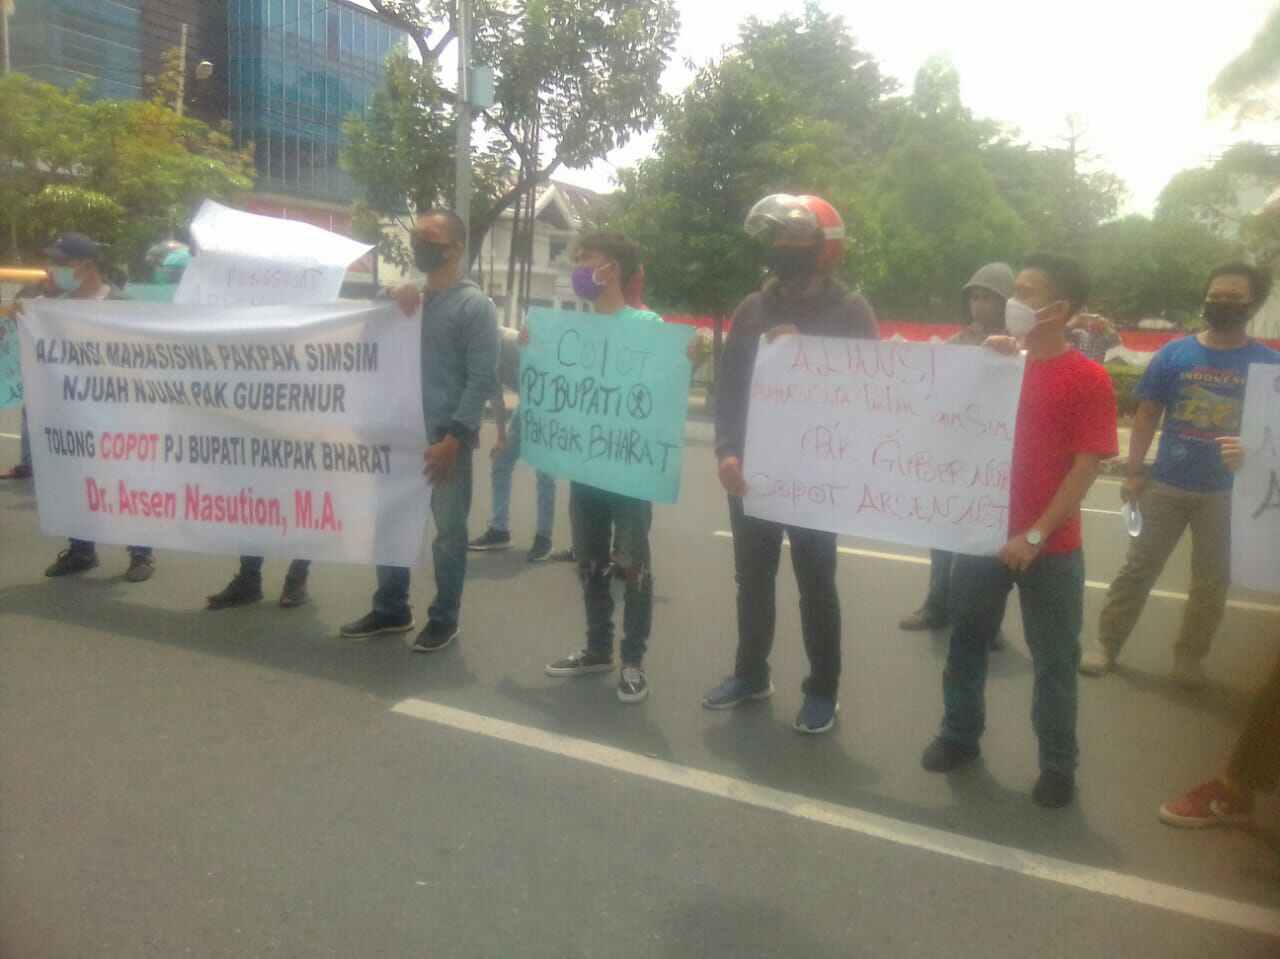 Aliansi Mahasiswa Pakpak Sim sim Demo di Kantor Gubernur Sumut, Tuntut Copot Pj. Bupati